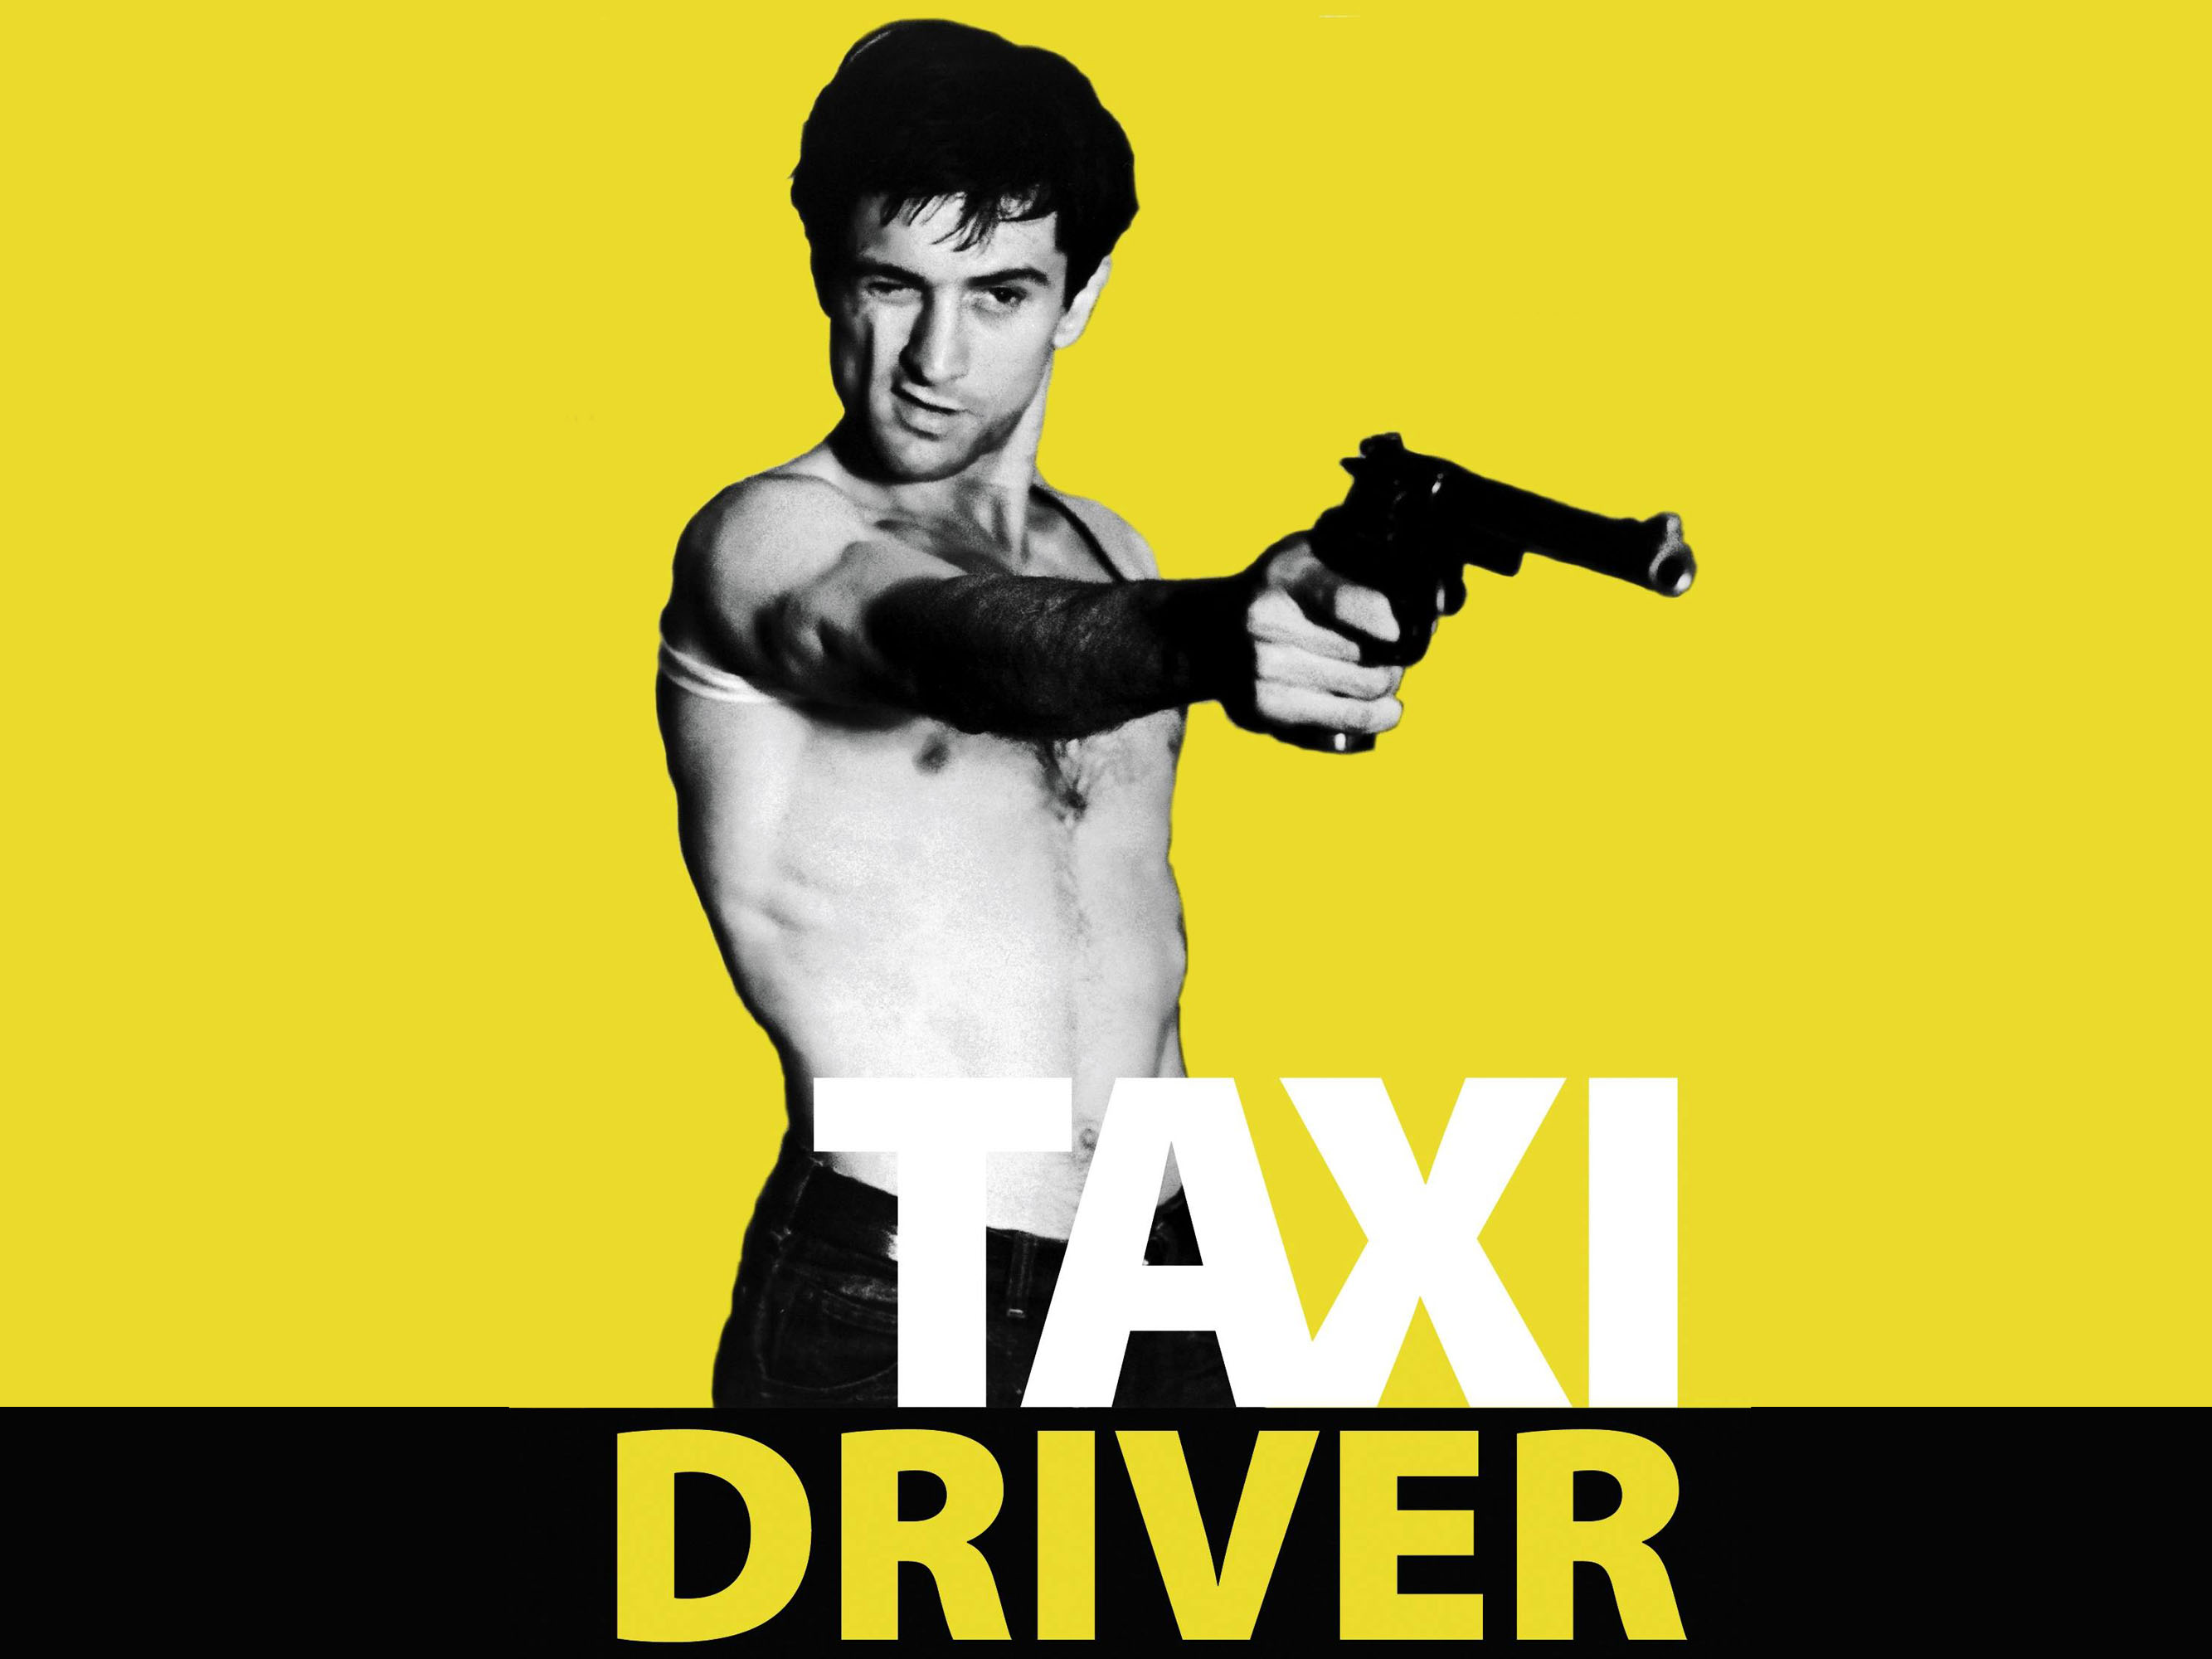 movies, Taxi Driver, Robert De Niro Wallpaper / WallpaperJam.com